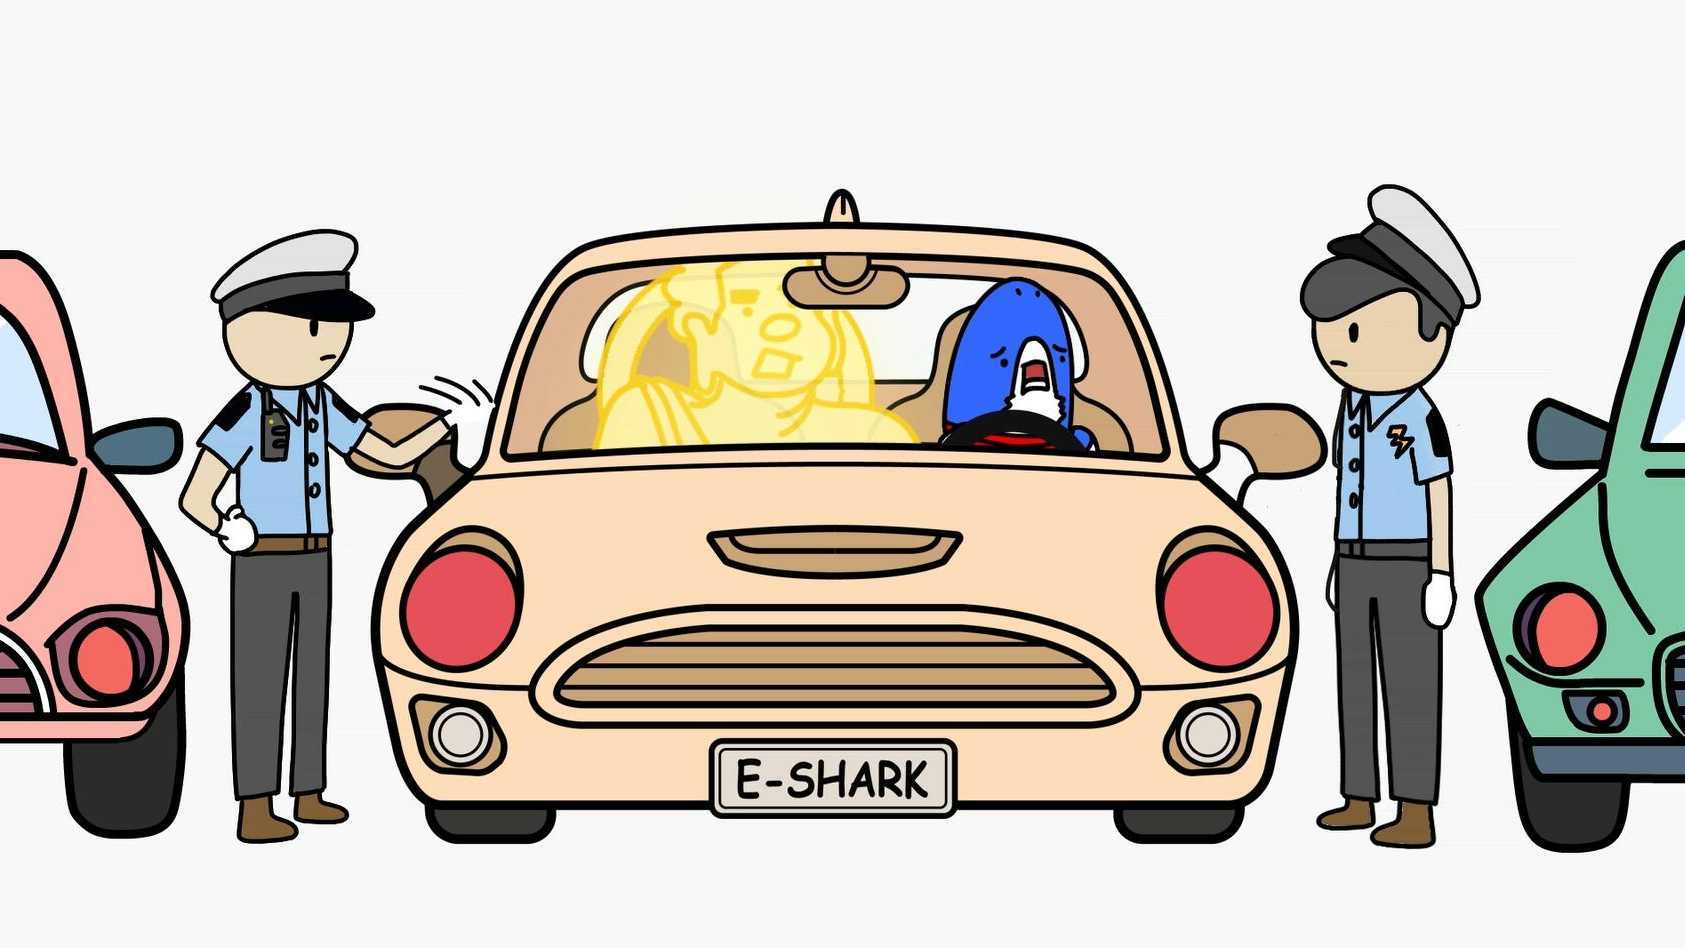 易车《易小鲨的100种车生活》之《完美泊车》《猫鼠游戏》《车神附体》